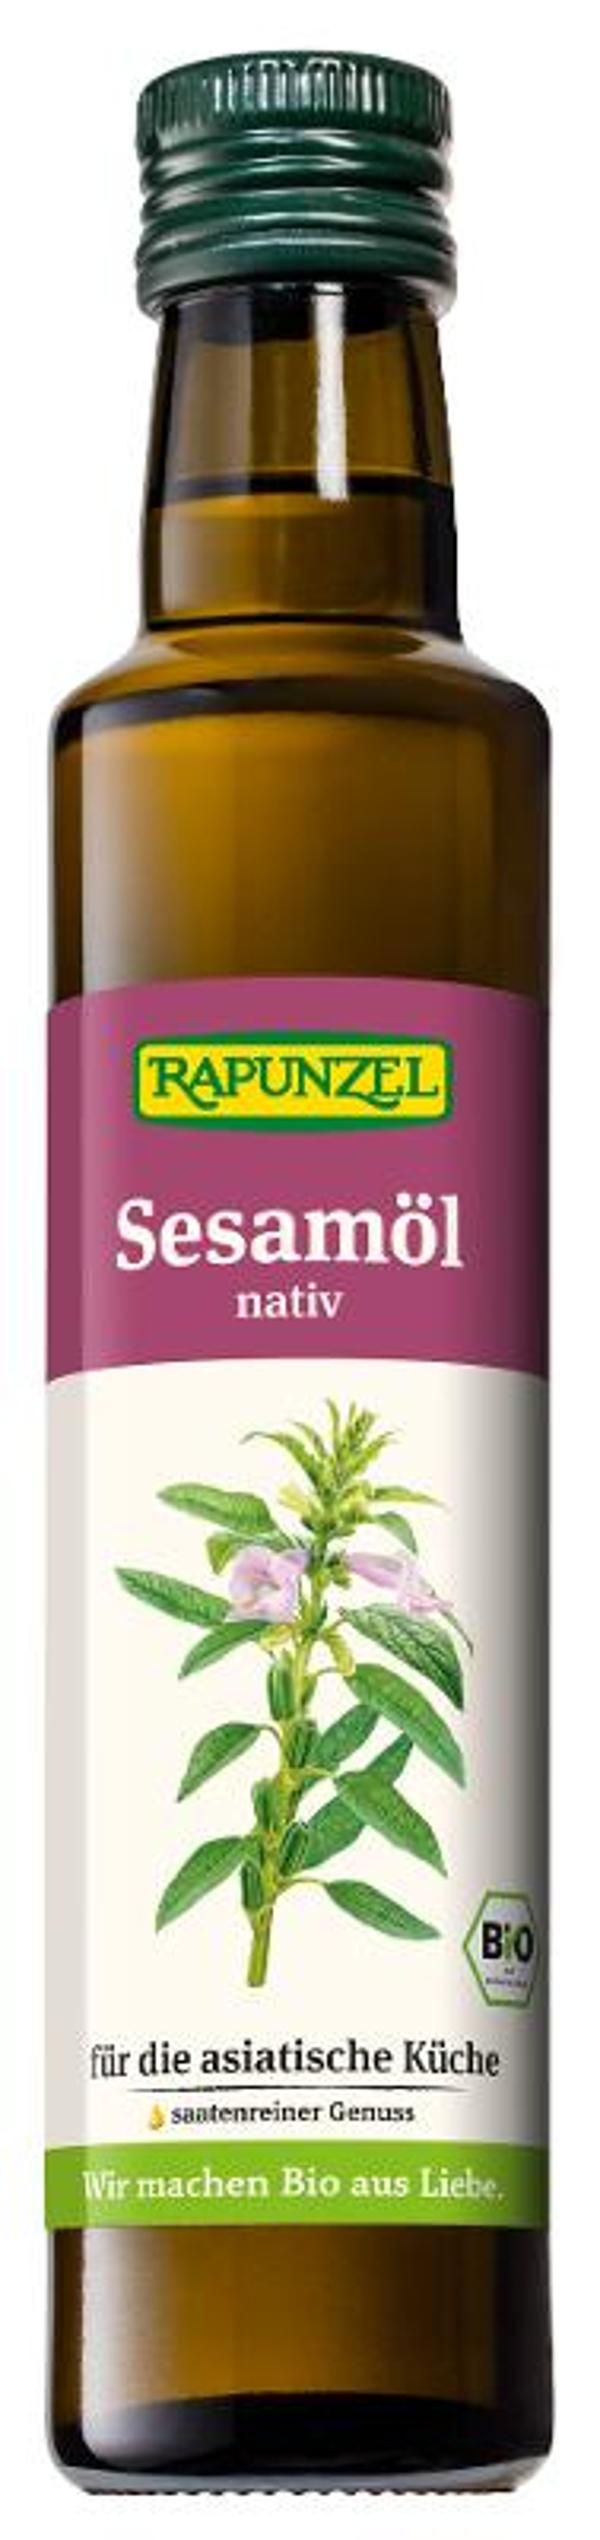 Produktfoto zu Sesamöl "nativ" 250ml *fein-nussig